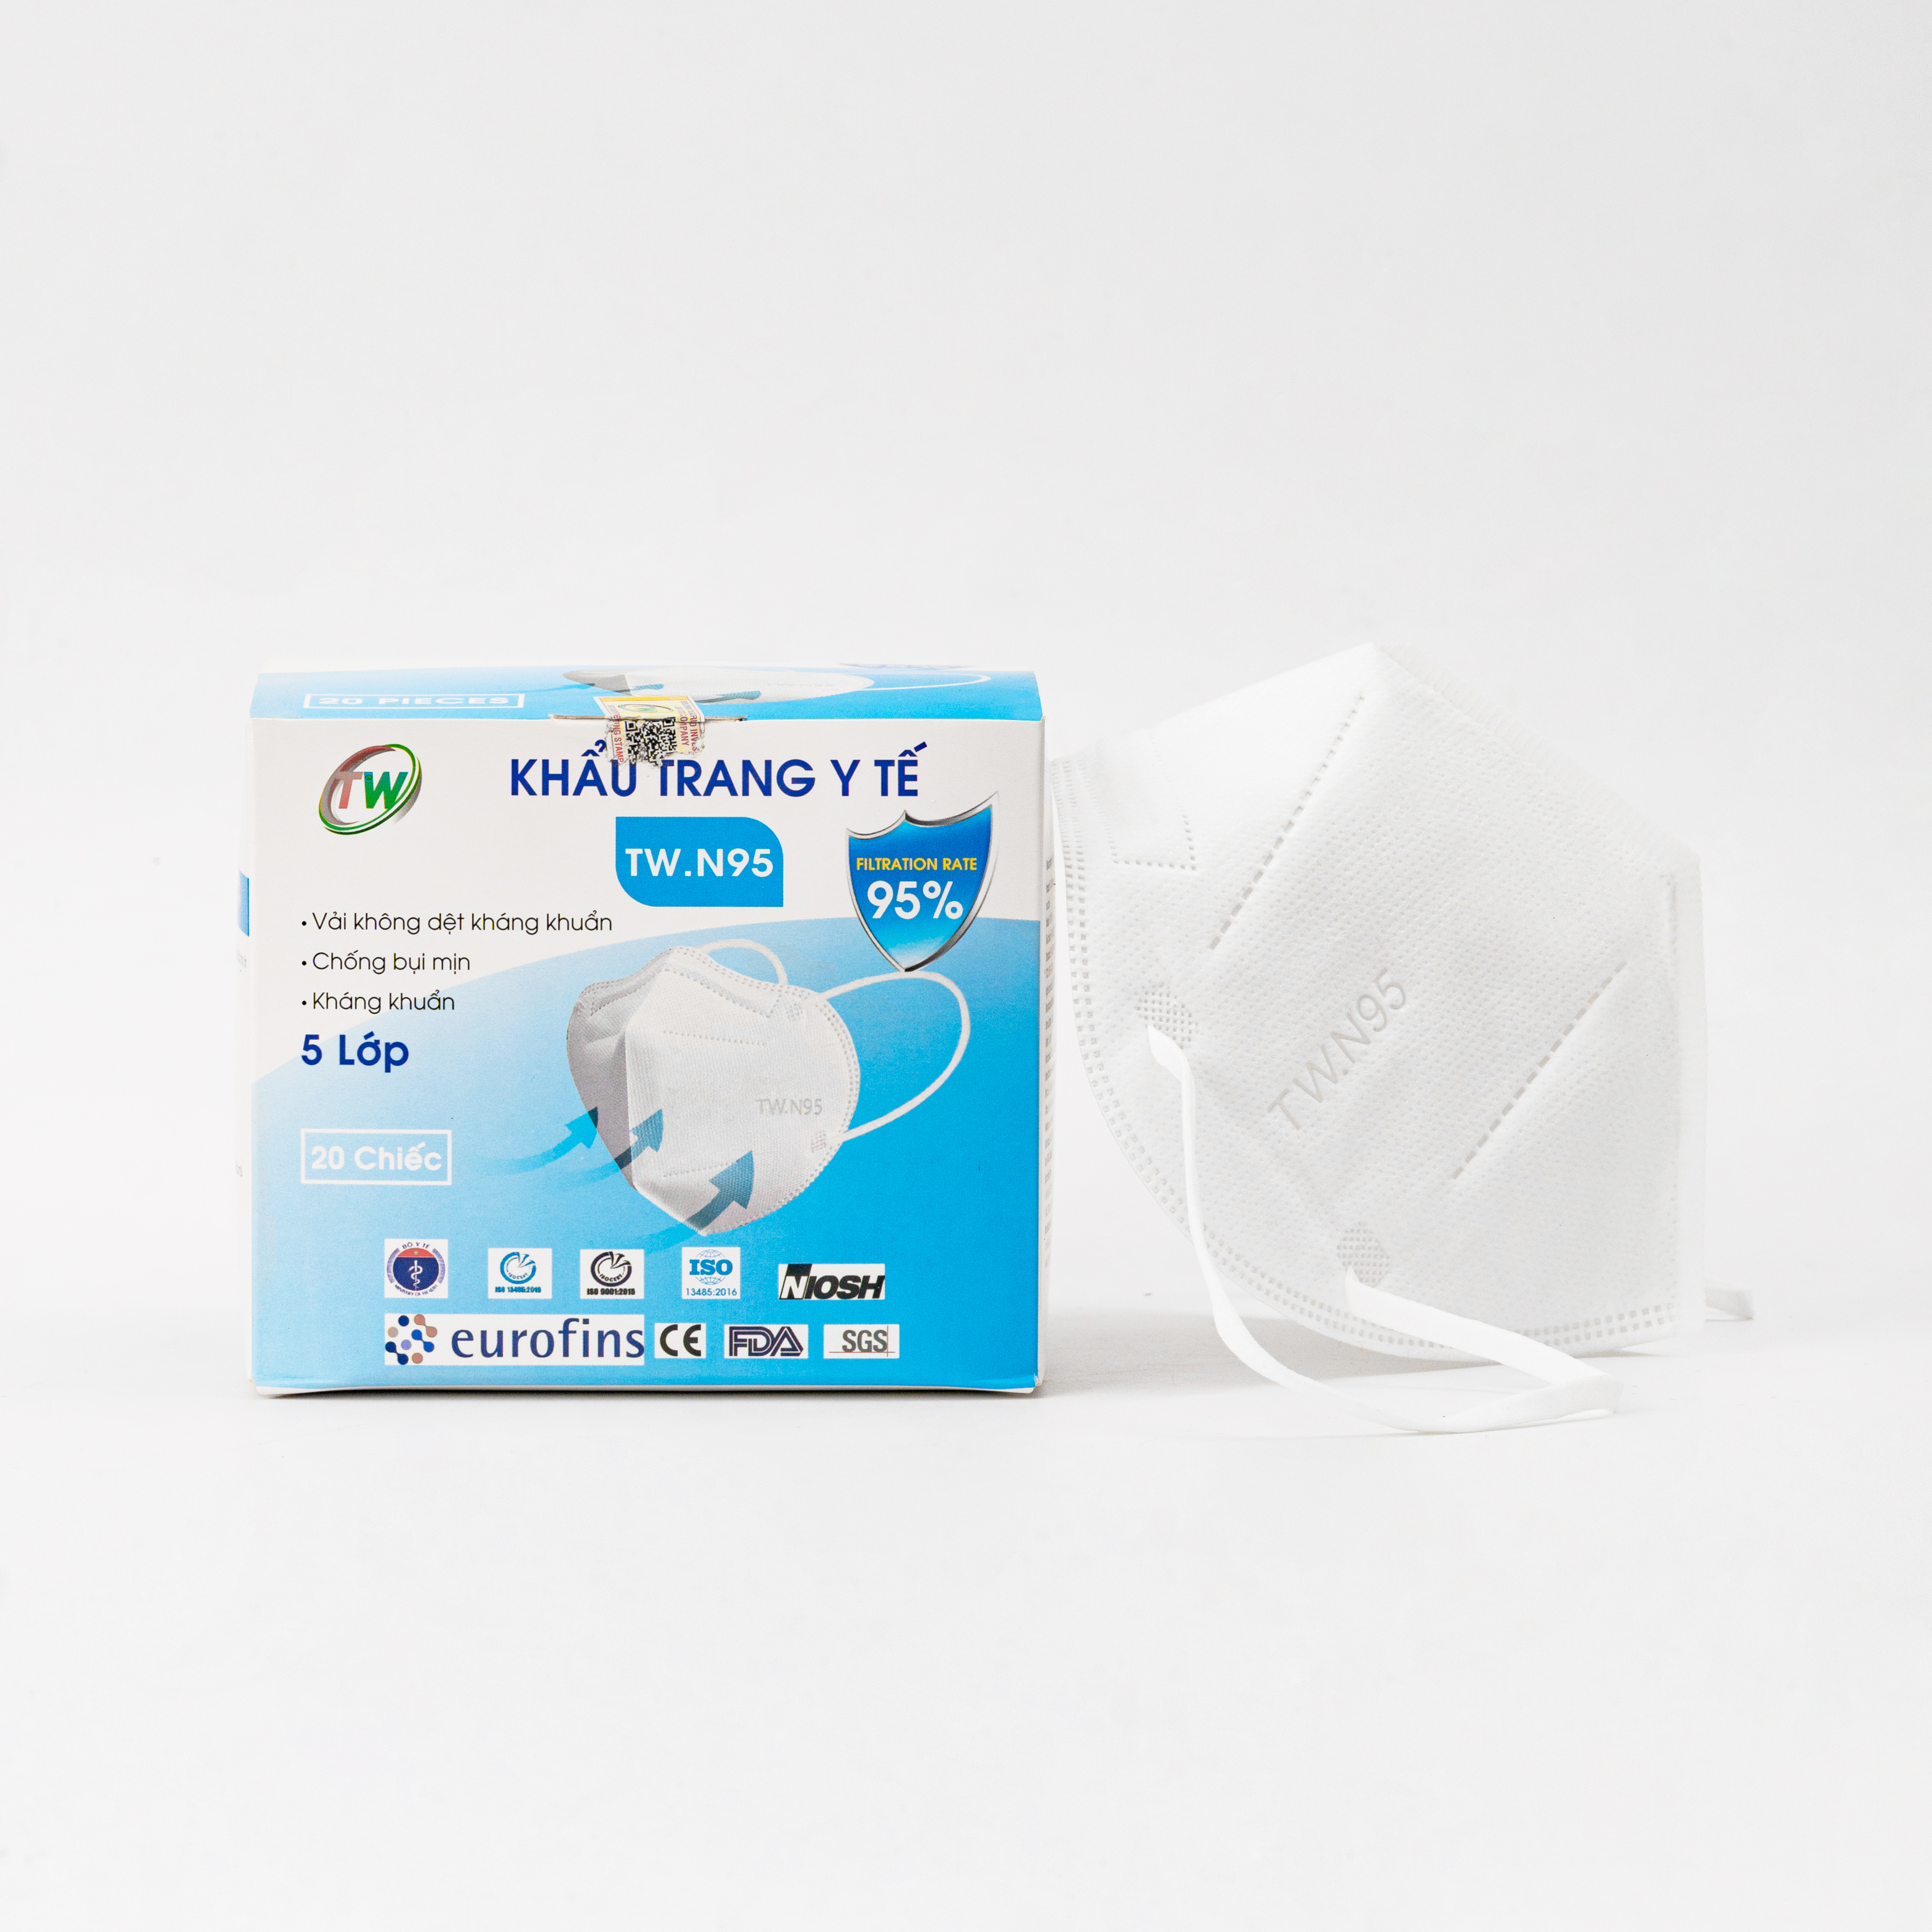 [Combo mua 2 hộp tặng 1 hộp] Khẩu trang TW N95 5 lớp kháng khuẩn, chống bụi mịn